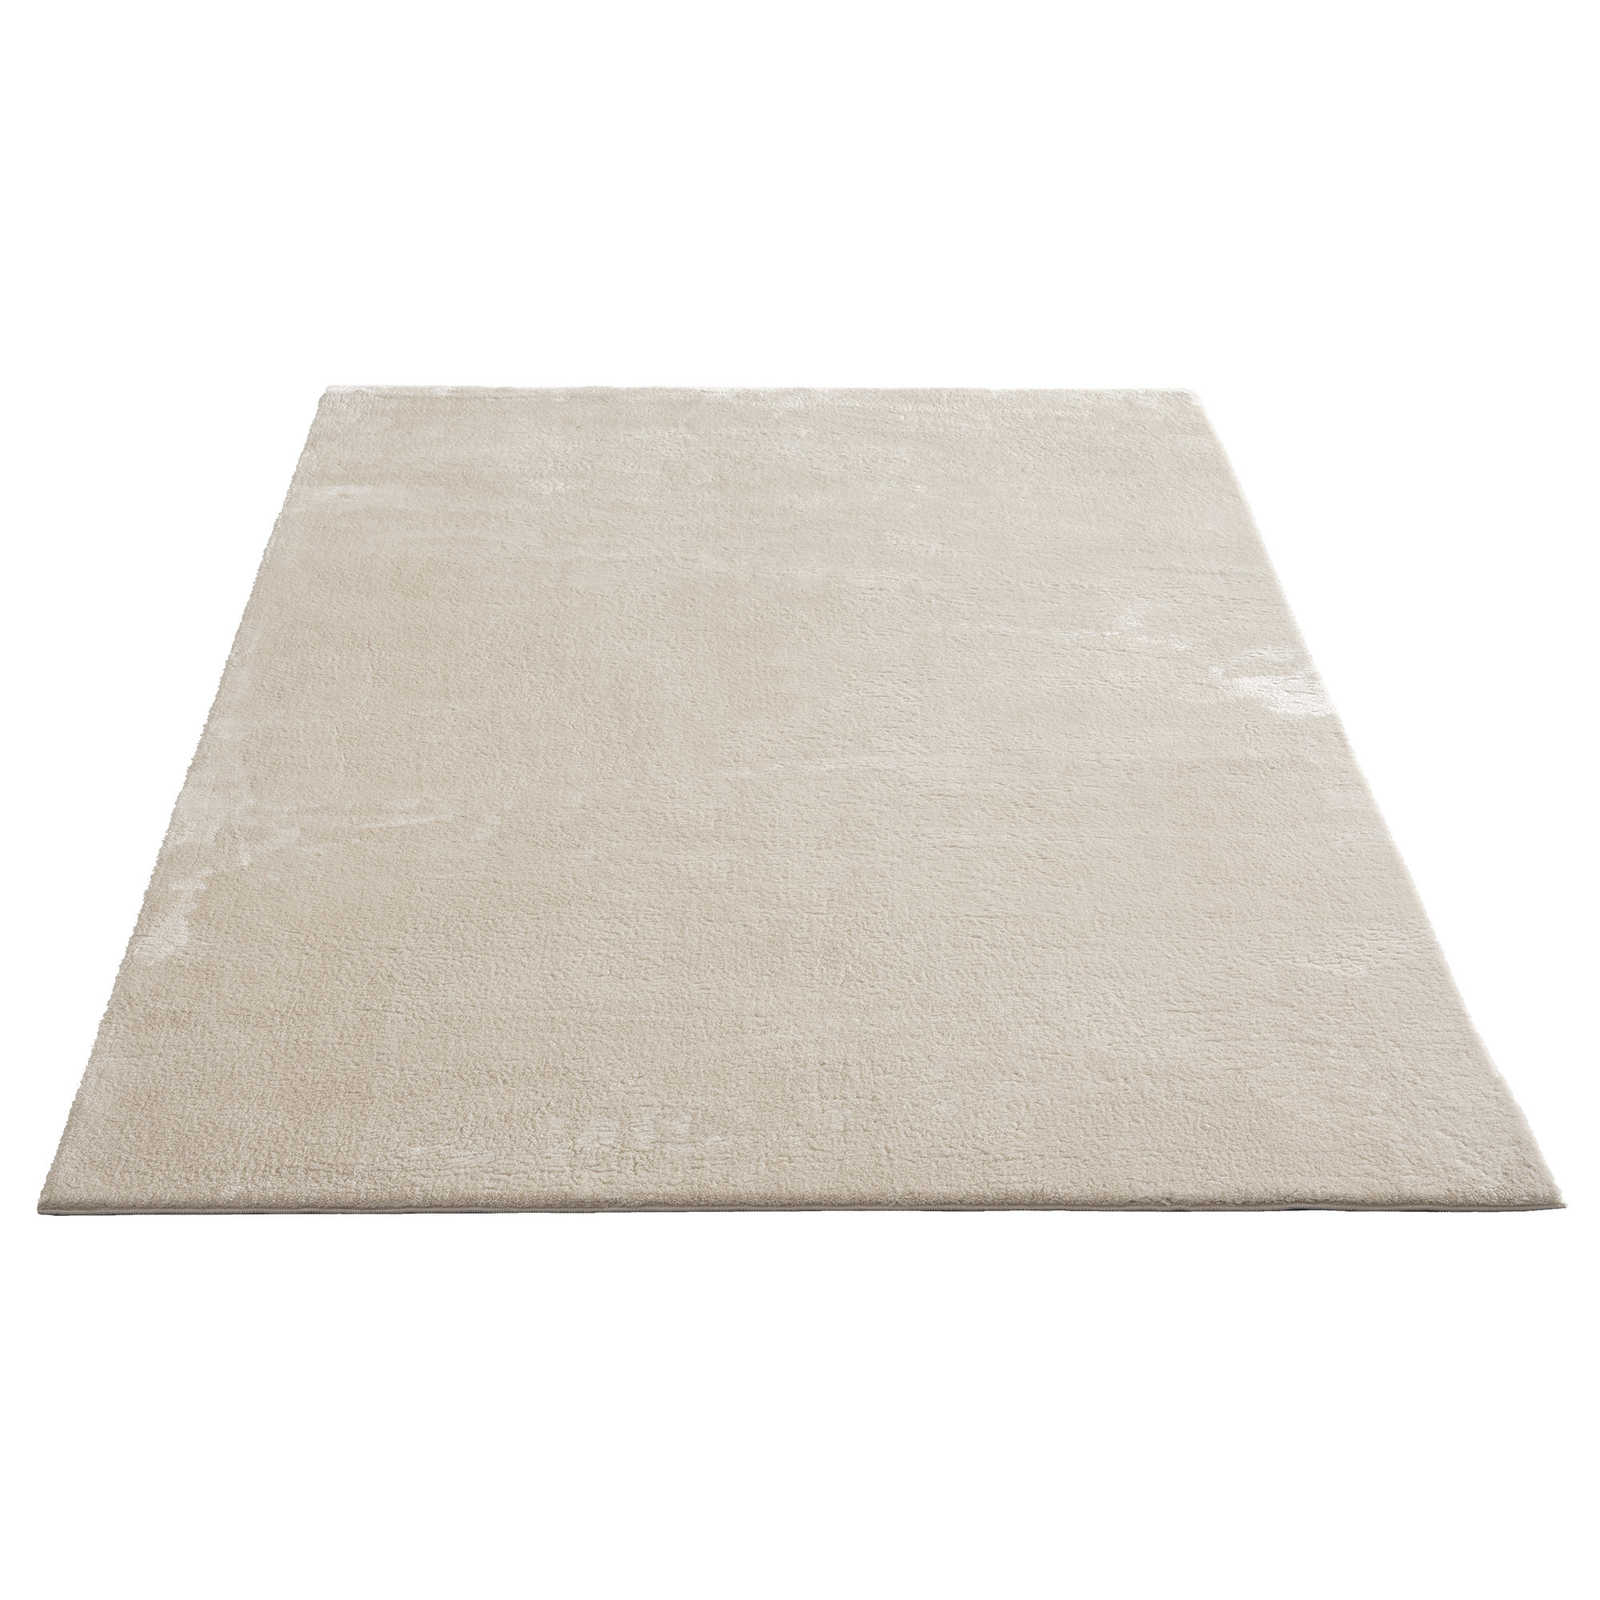 Zacht hoogpolig tapijt in beige - 340 x 240 cm
